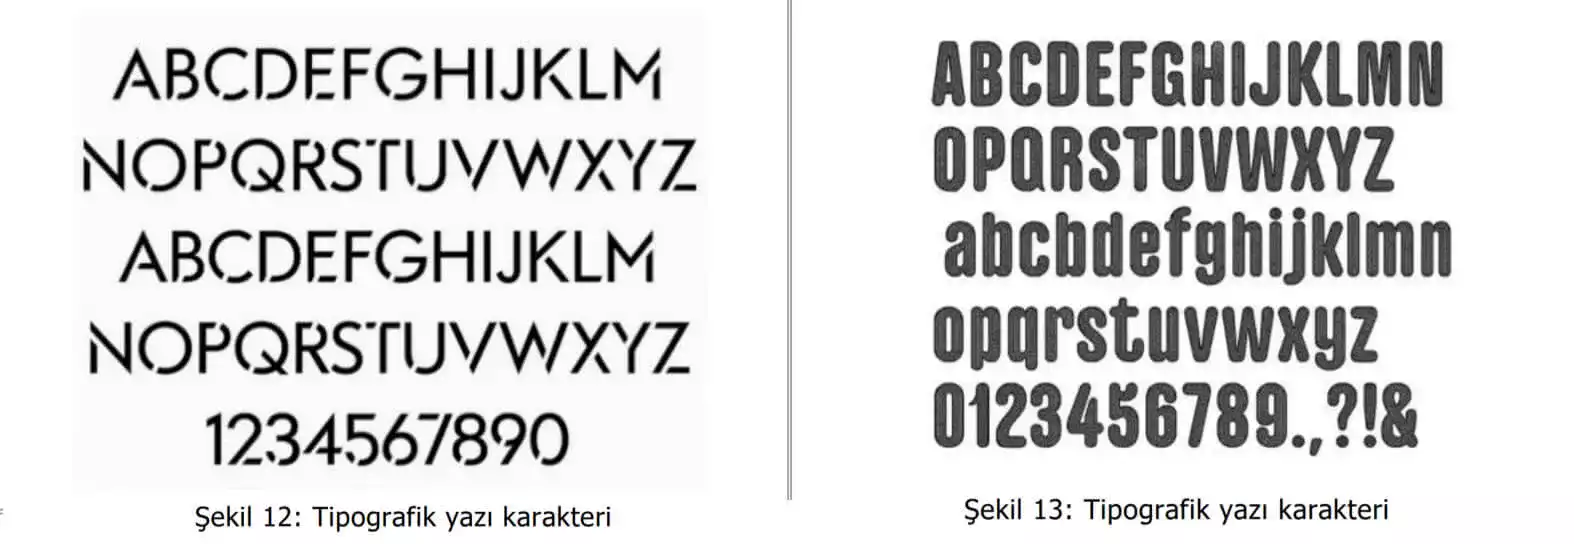 tipografik yazı karakter örnekleri-Mersin Web Tasarım